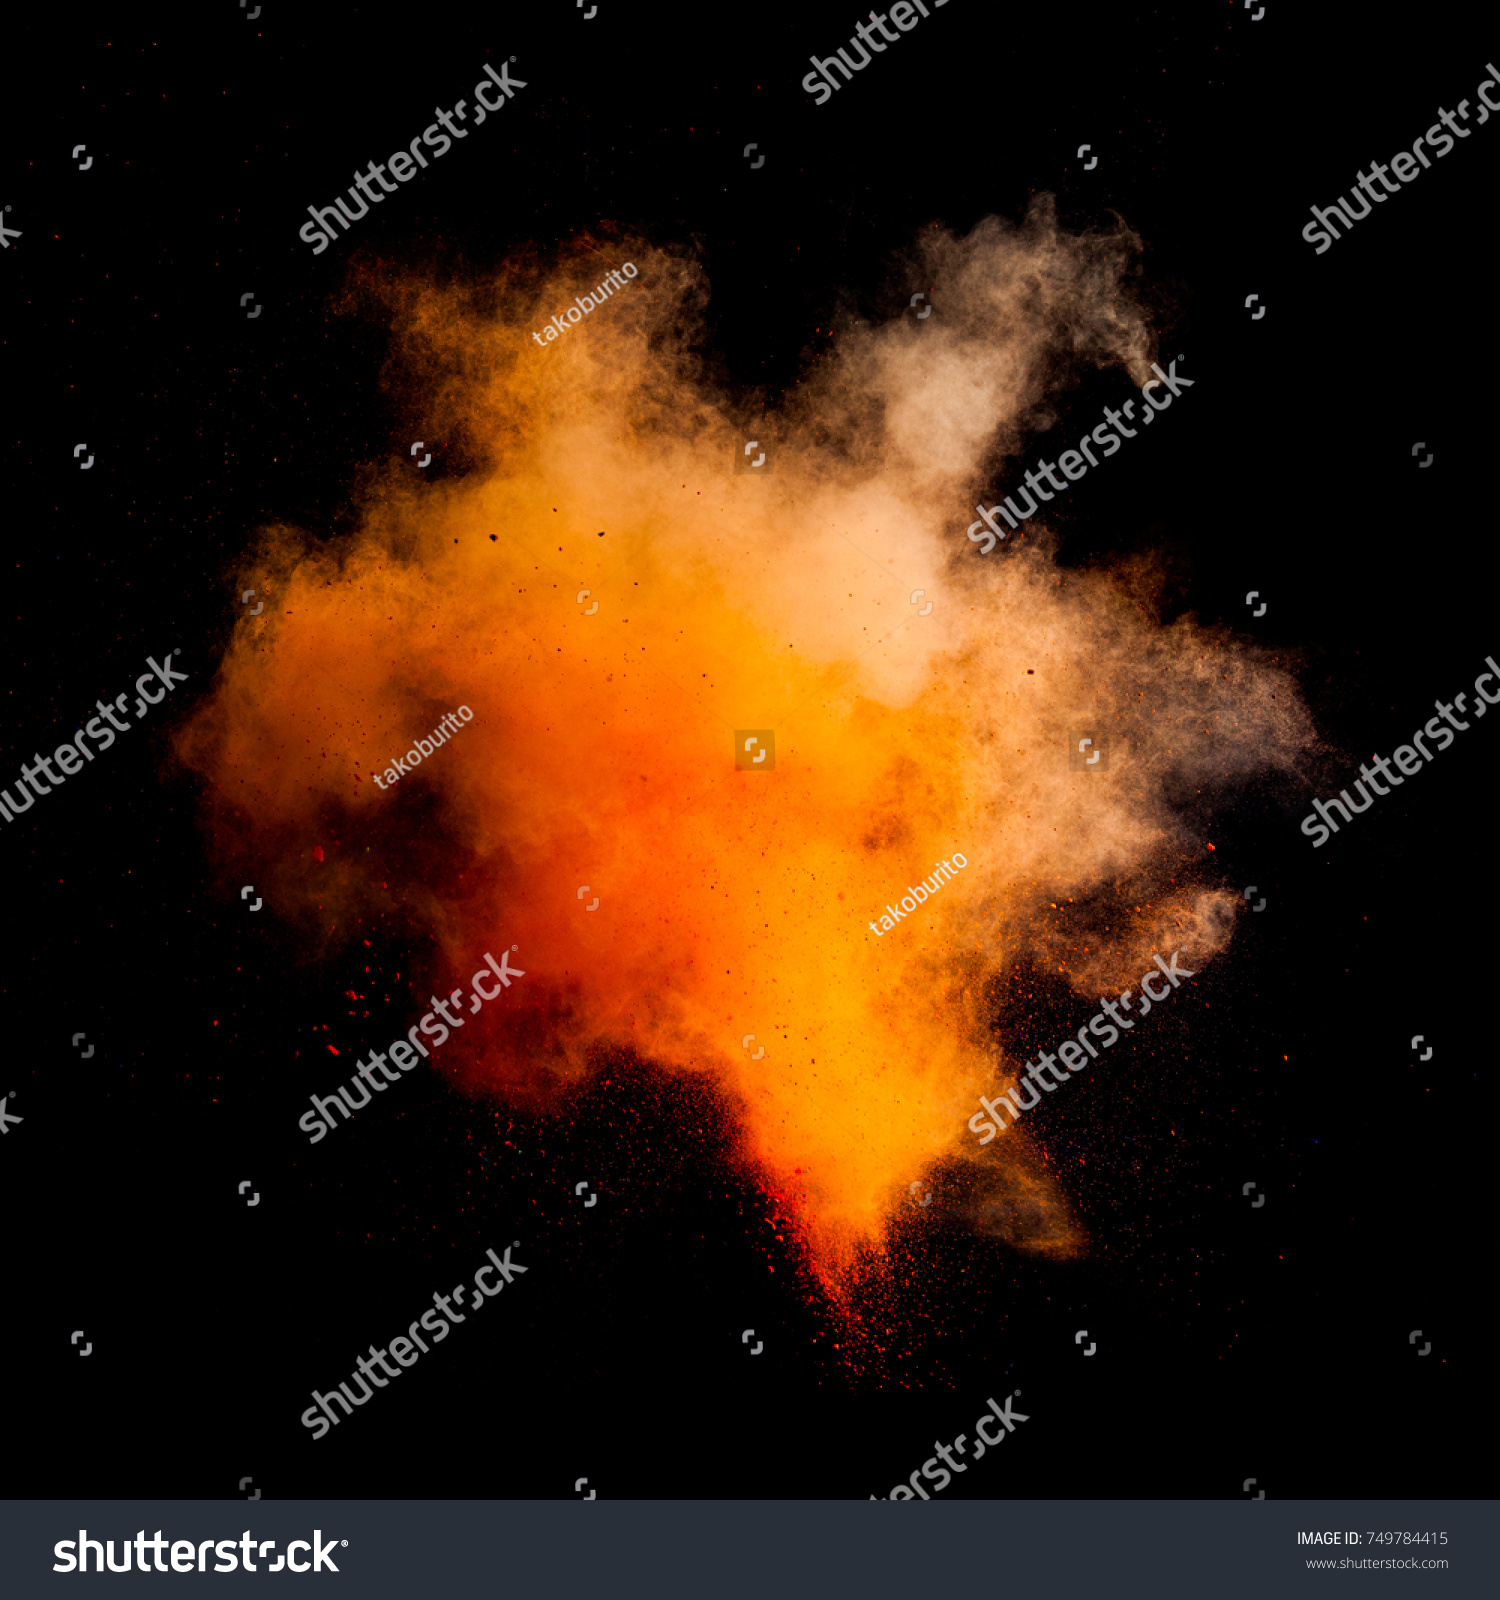 Freeze motion of orange dust explosion isolated on black background #749784415